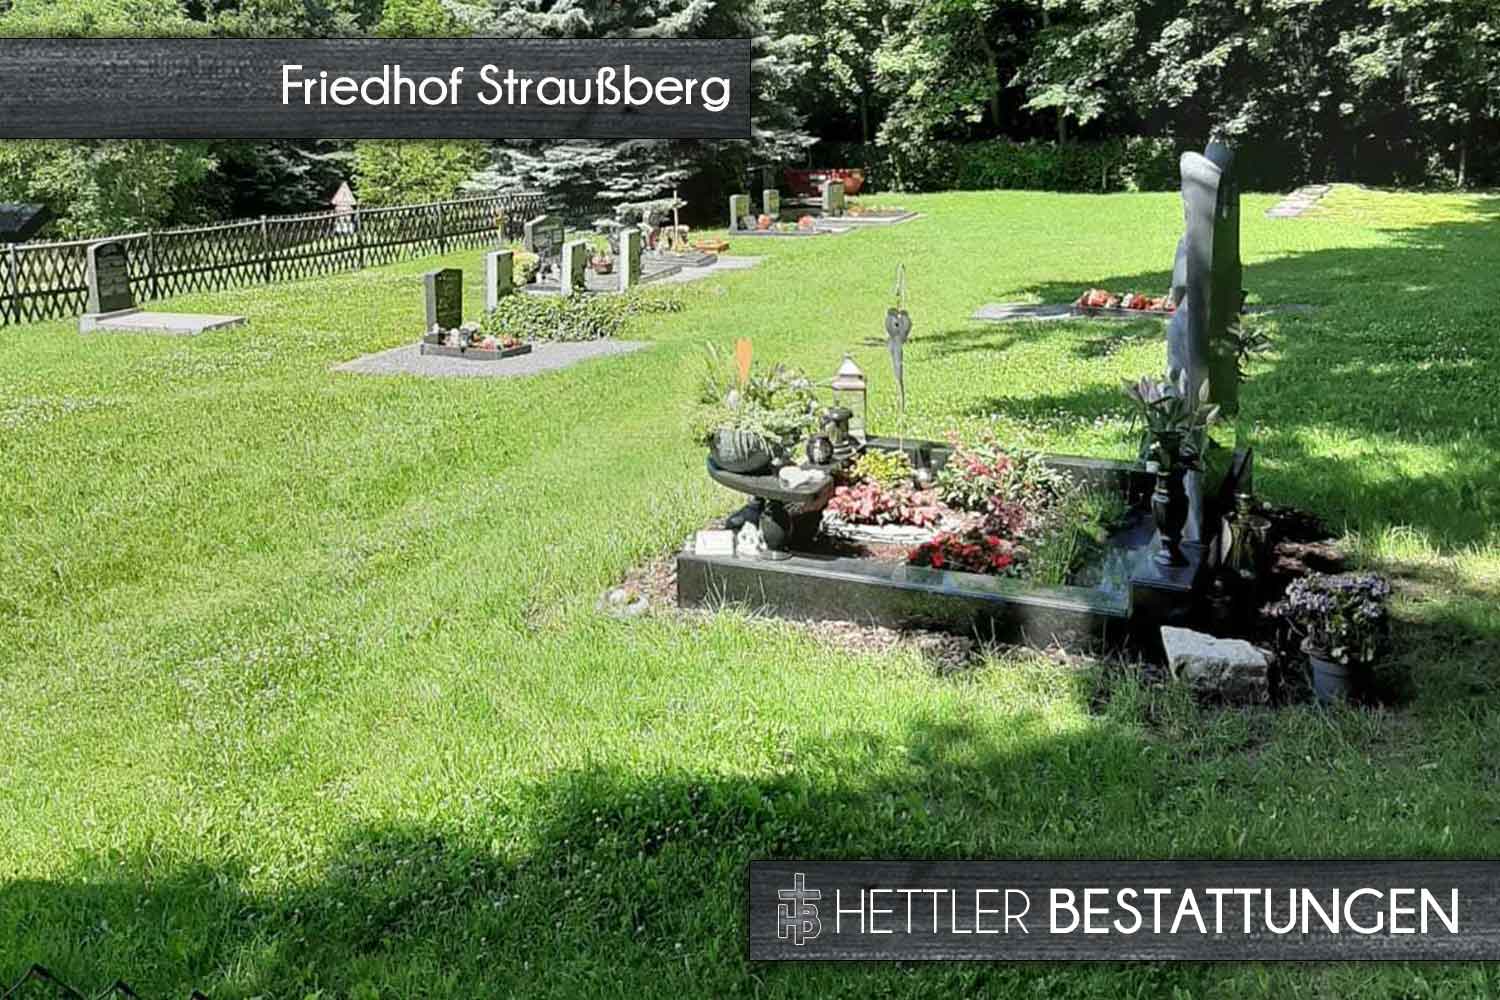 Friedhof in Straußberg. Ihr Ort des Abschieds mit Hettler Bestattungen.